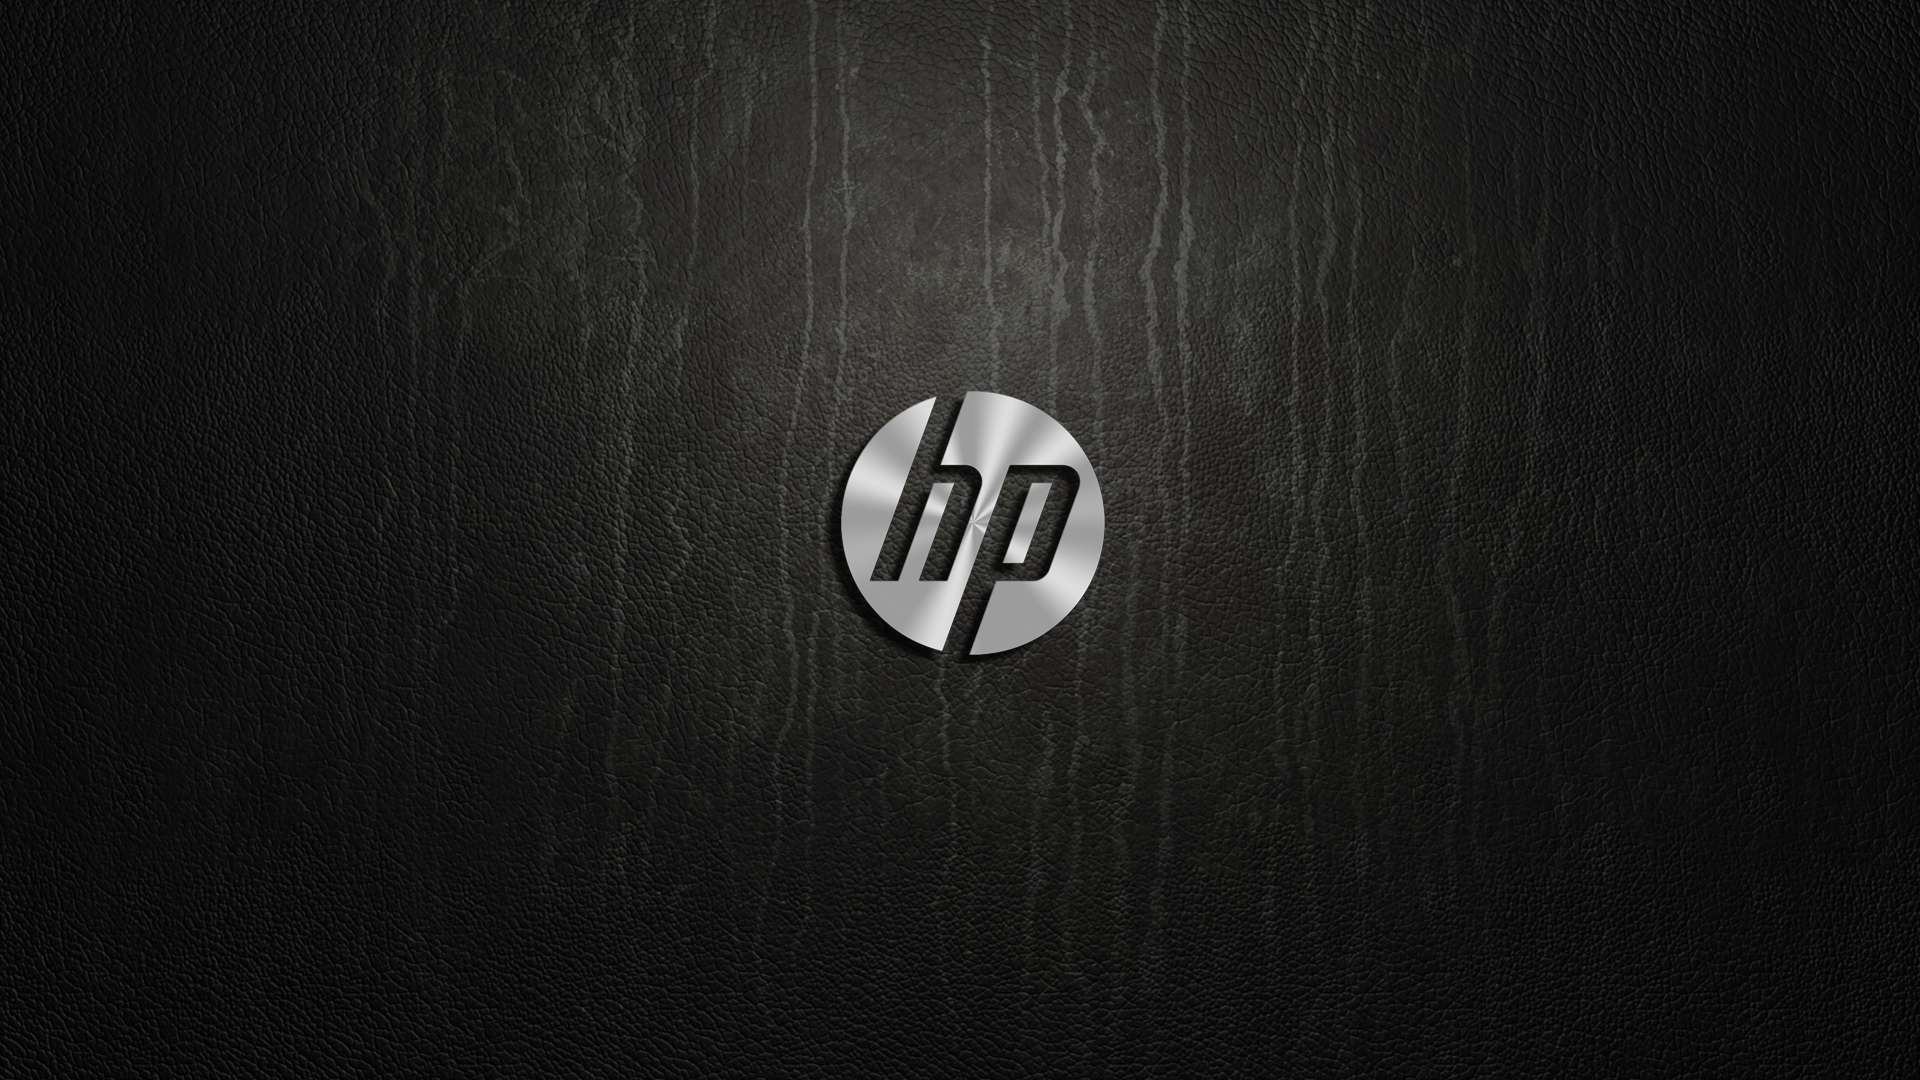 Hewlett Packard HD Wallpaper Background Image